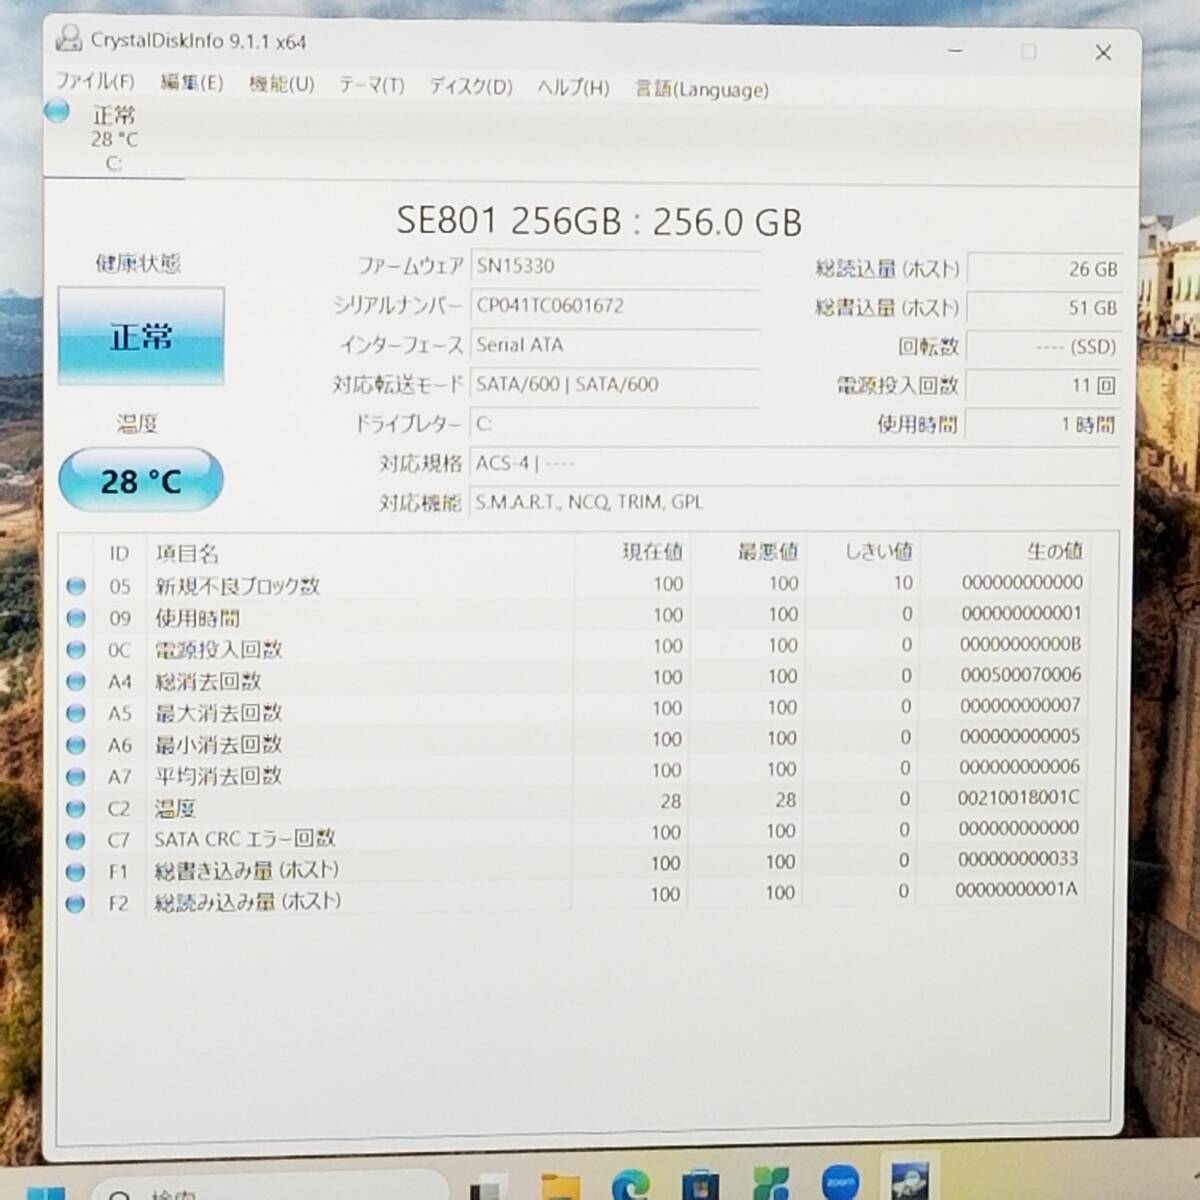  новый товар SSD* память 16GB установка / прекрасный товар / быстрое решение дополнительный подарок! no. 7 поколение i7/Web камера /Blu-ray/Office/ скорость отгрузка /Win11/ немедленно использование возможно Note PC(D6188)